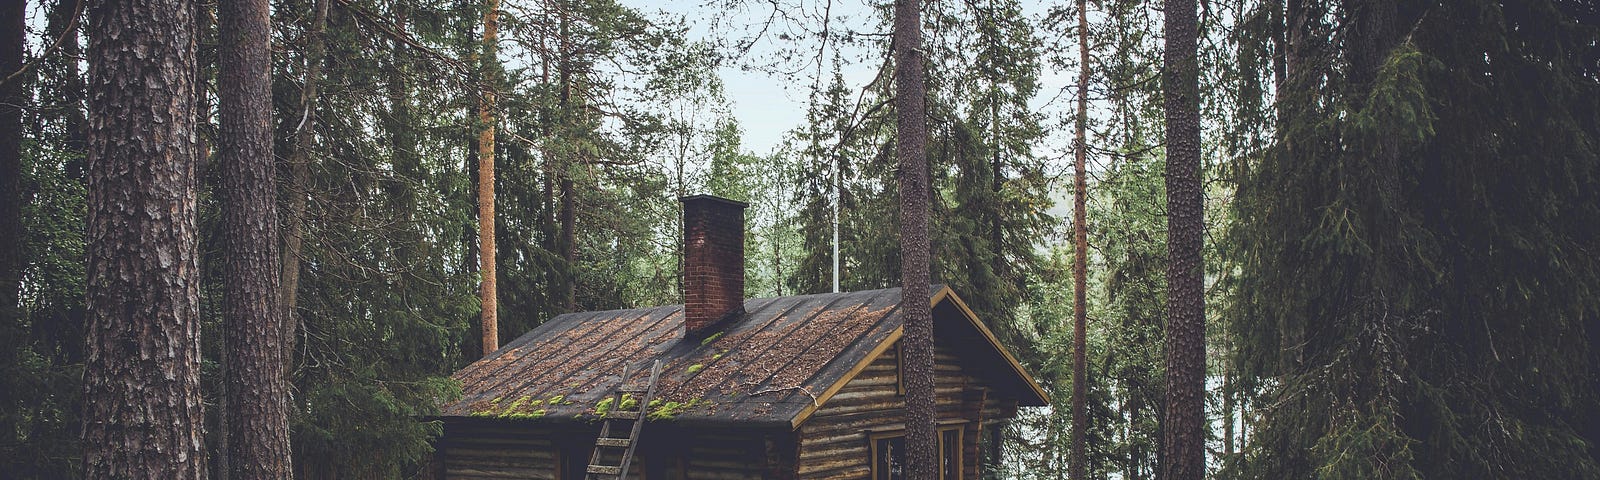 A log cabin